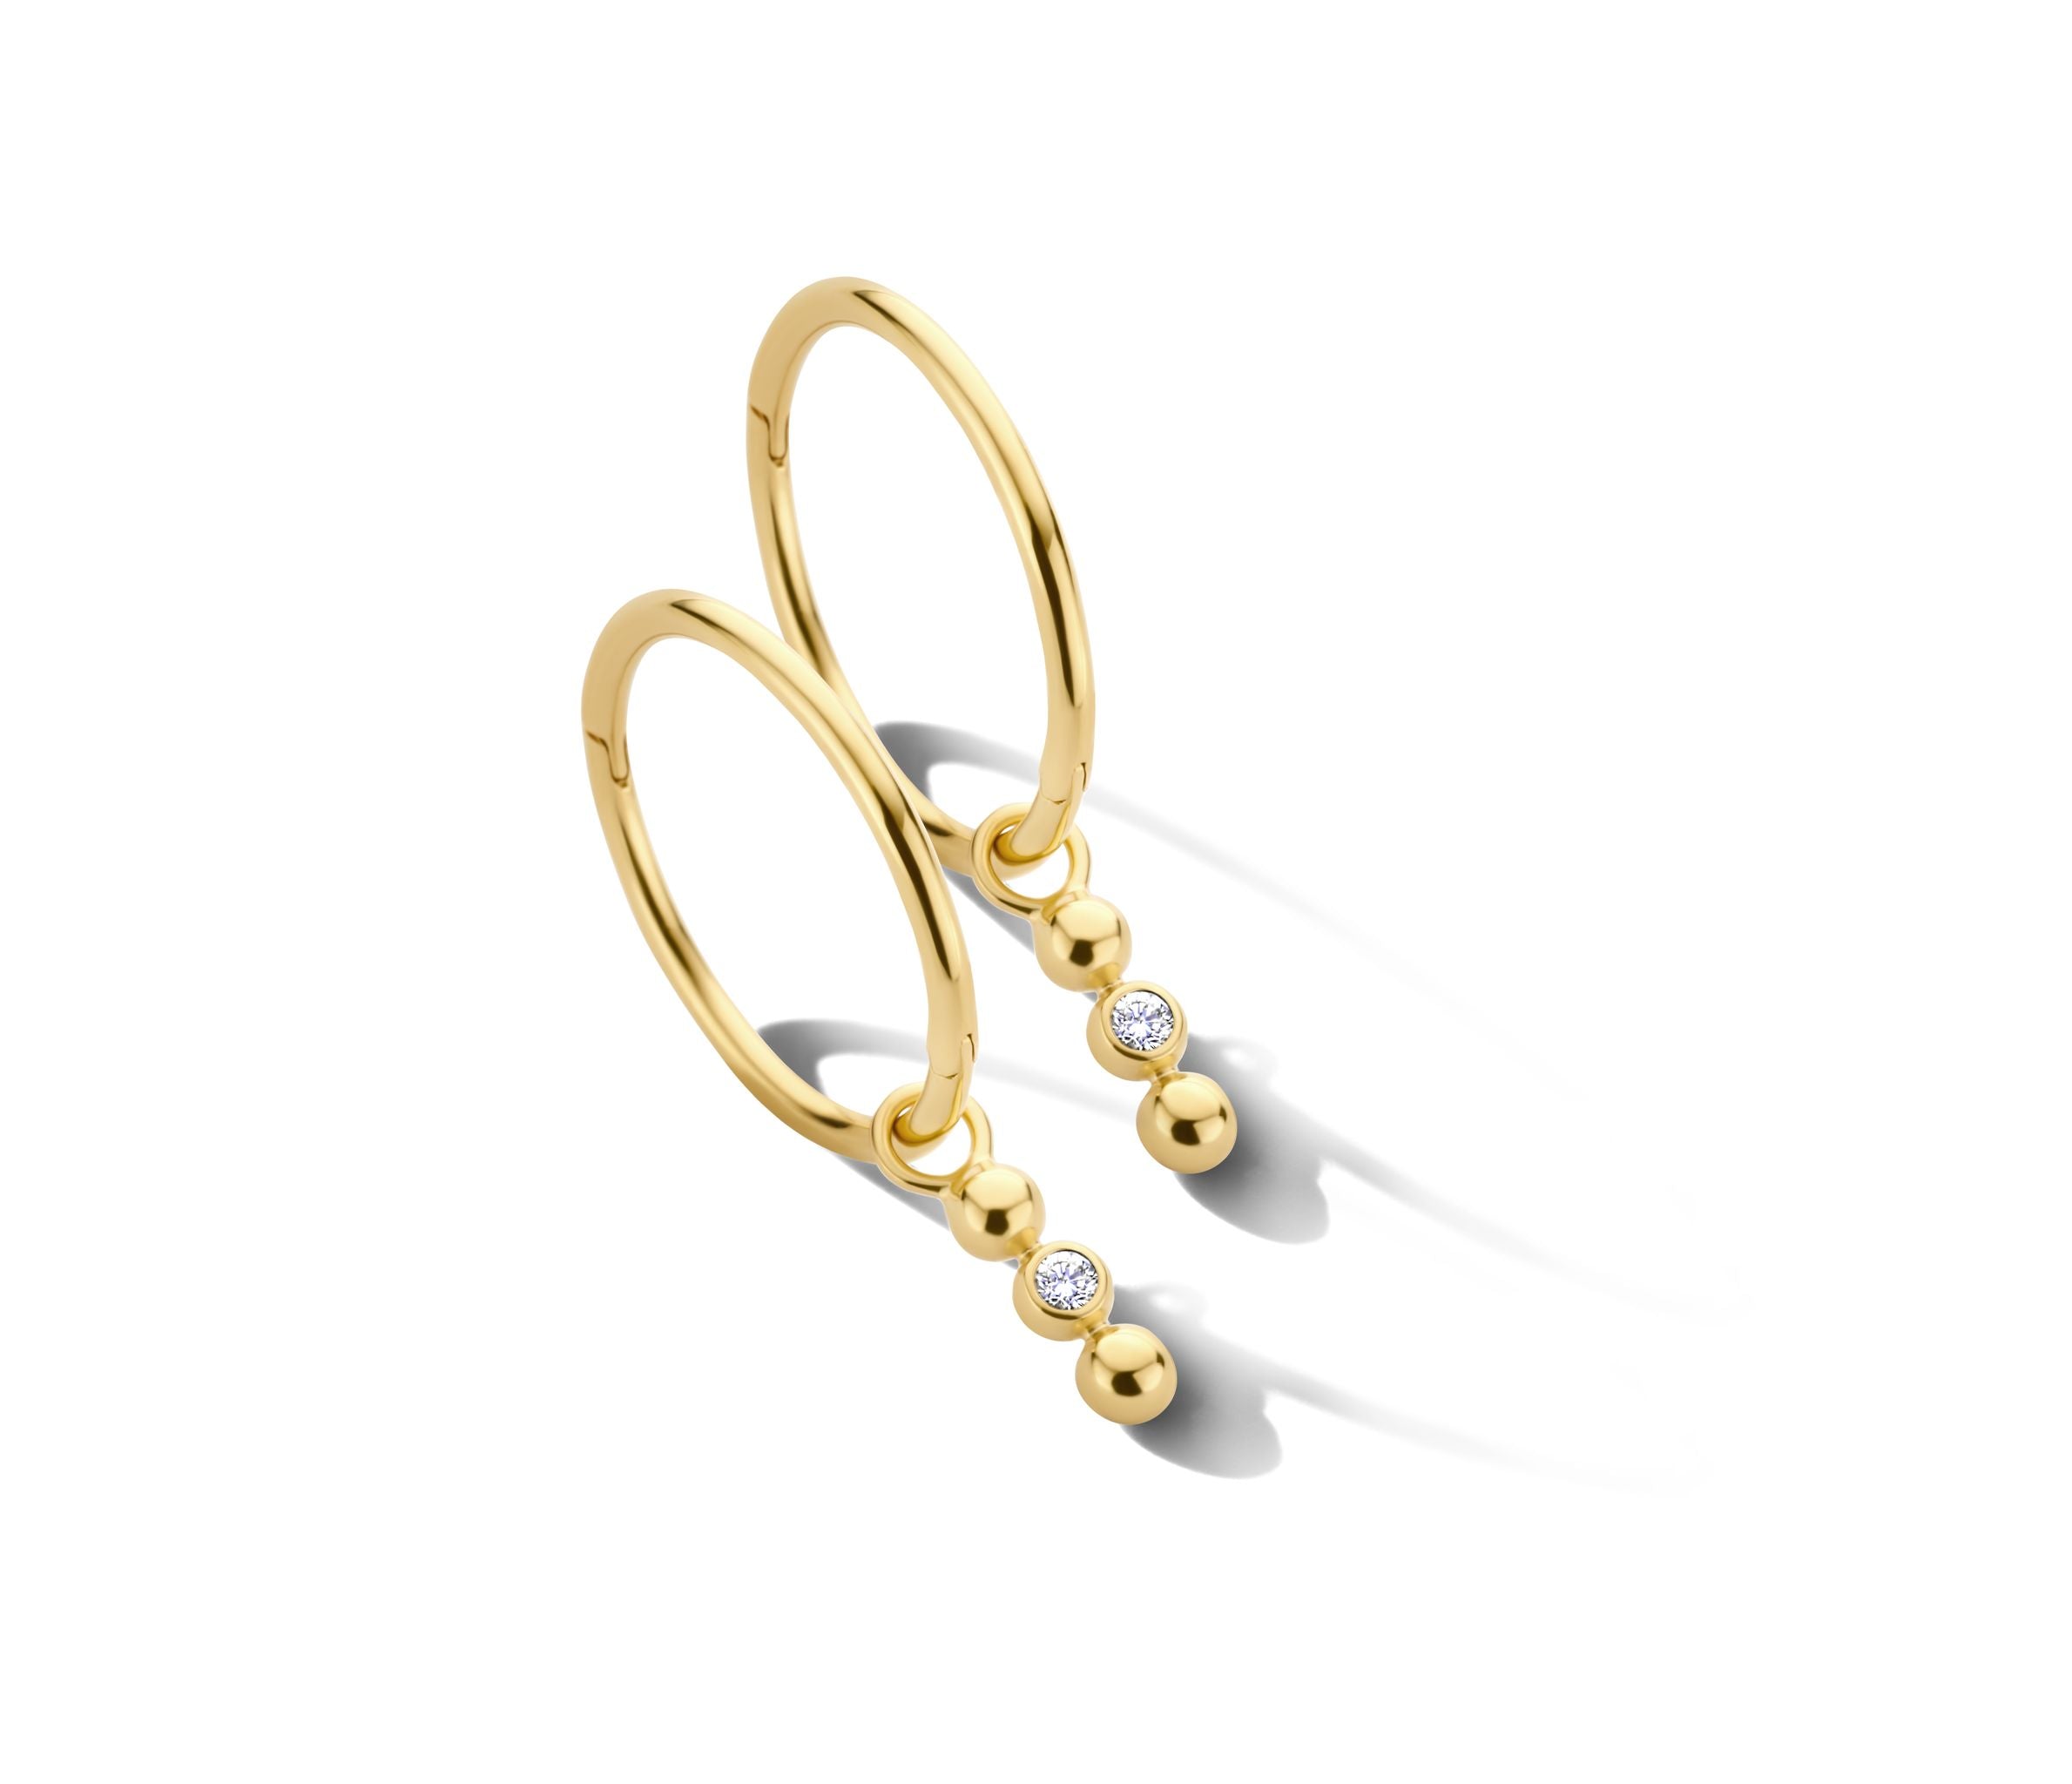 Imagine hoop øreringe uden vedhæng - x-small diameter 1 cm - 14 kt. guld-6